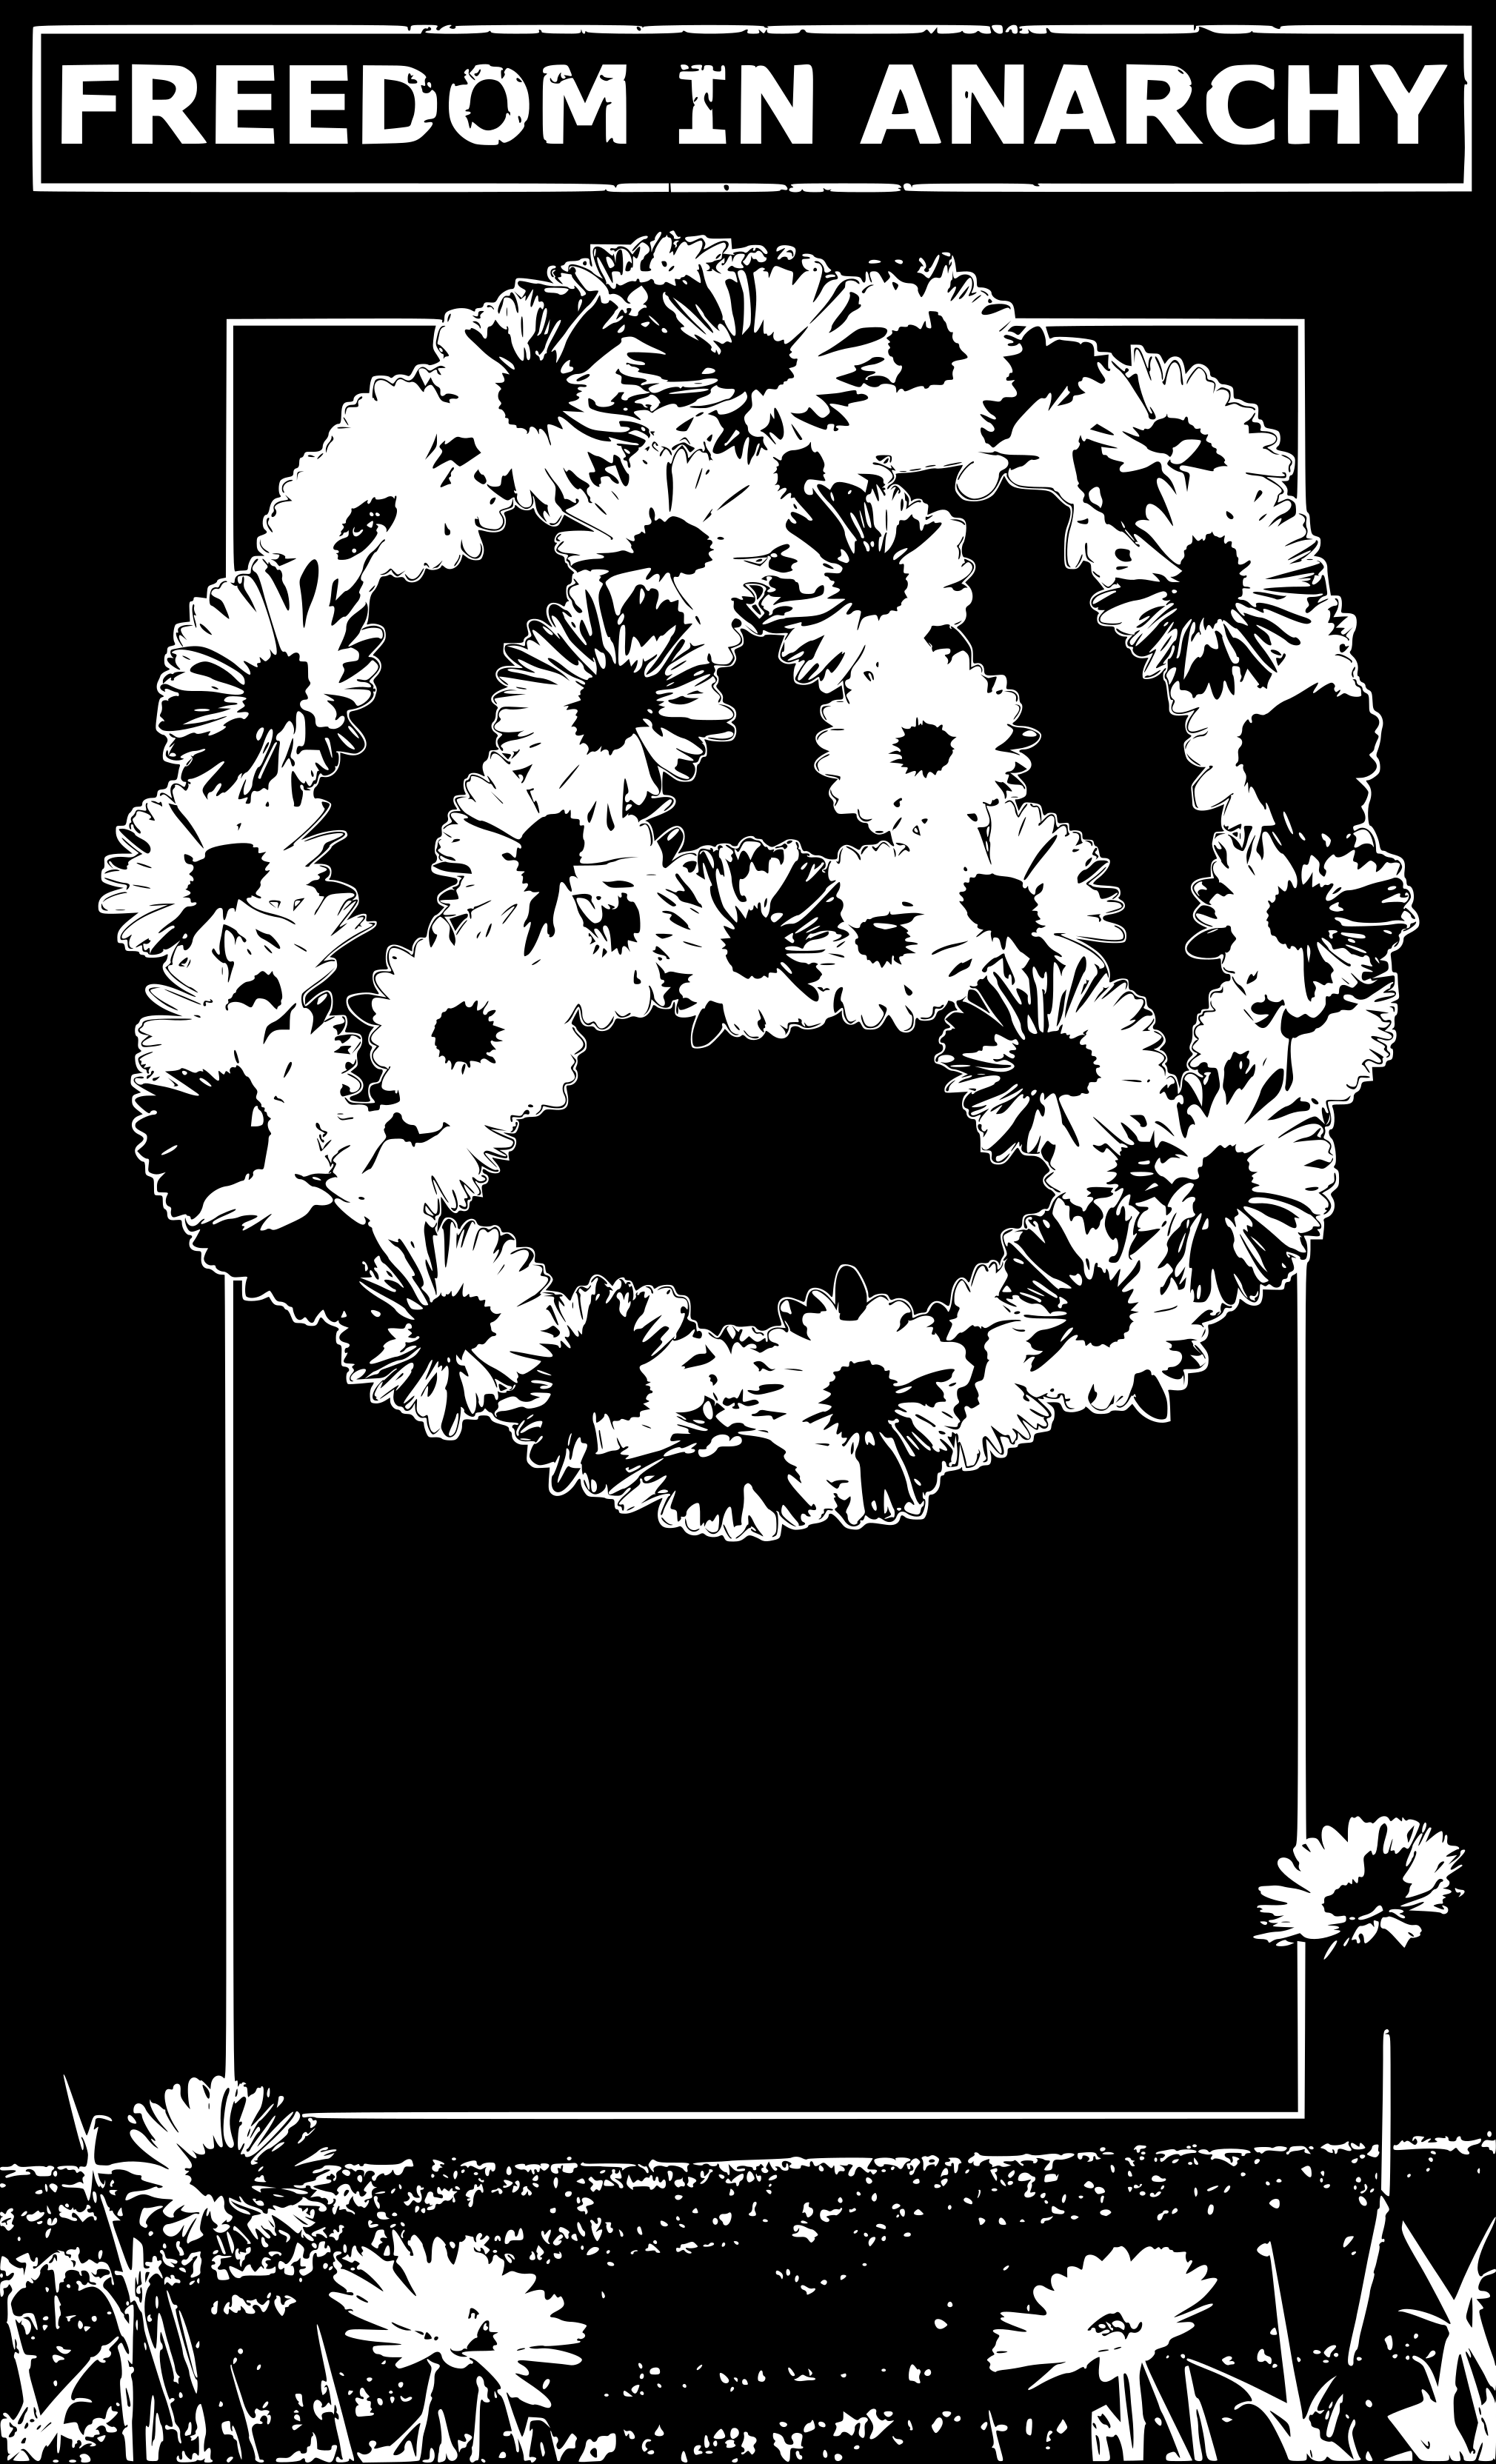 Ein Circle A aus Blumen, oben steht Freedom in Anarchy.